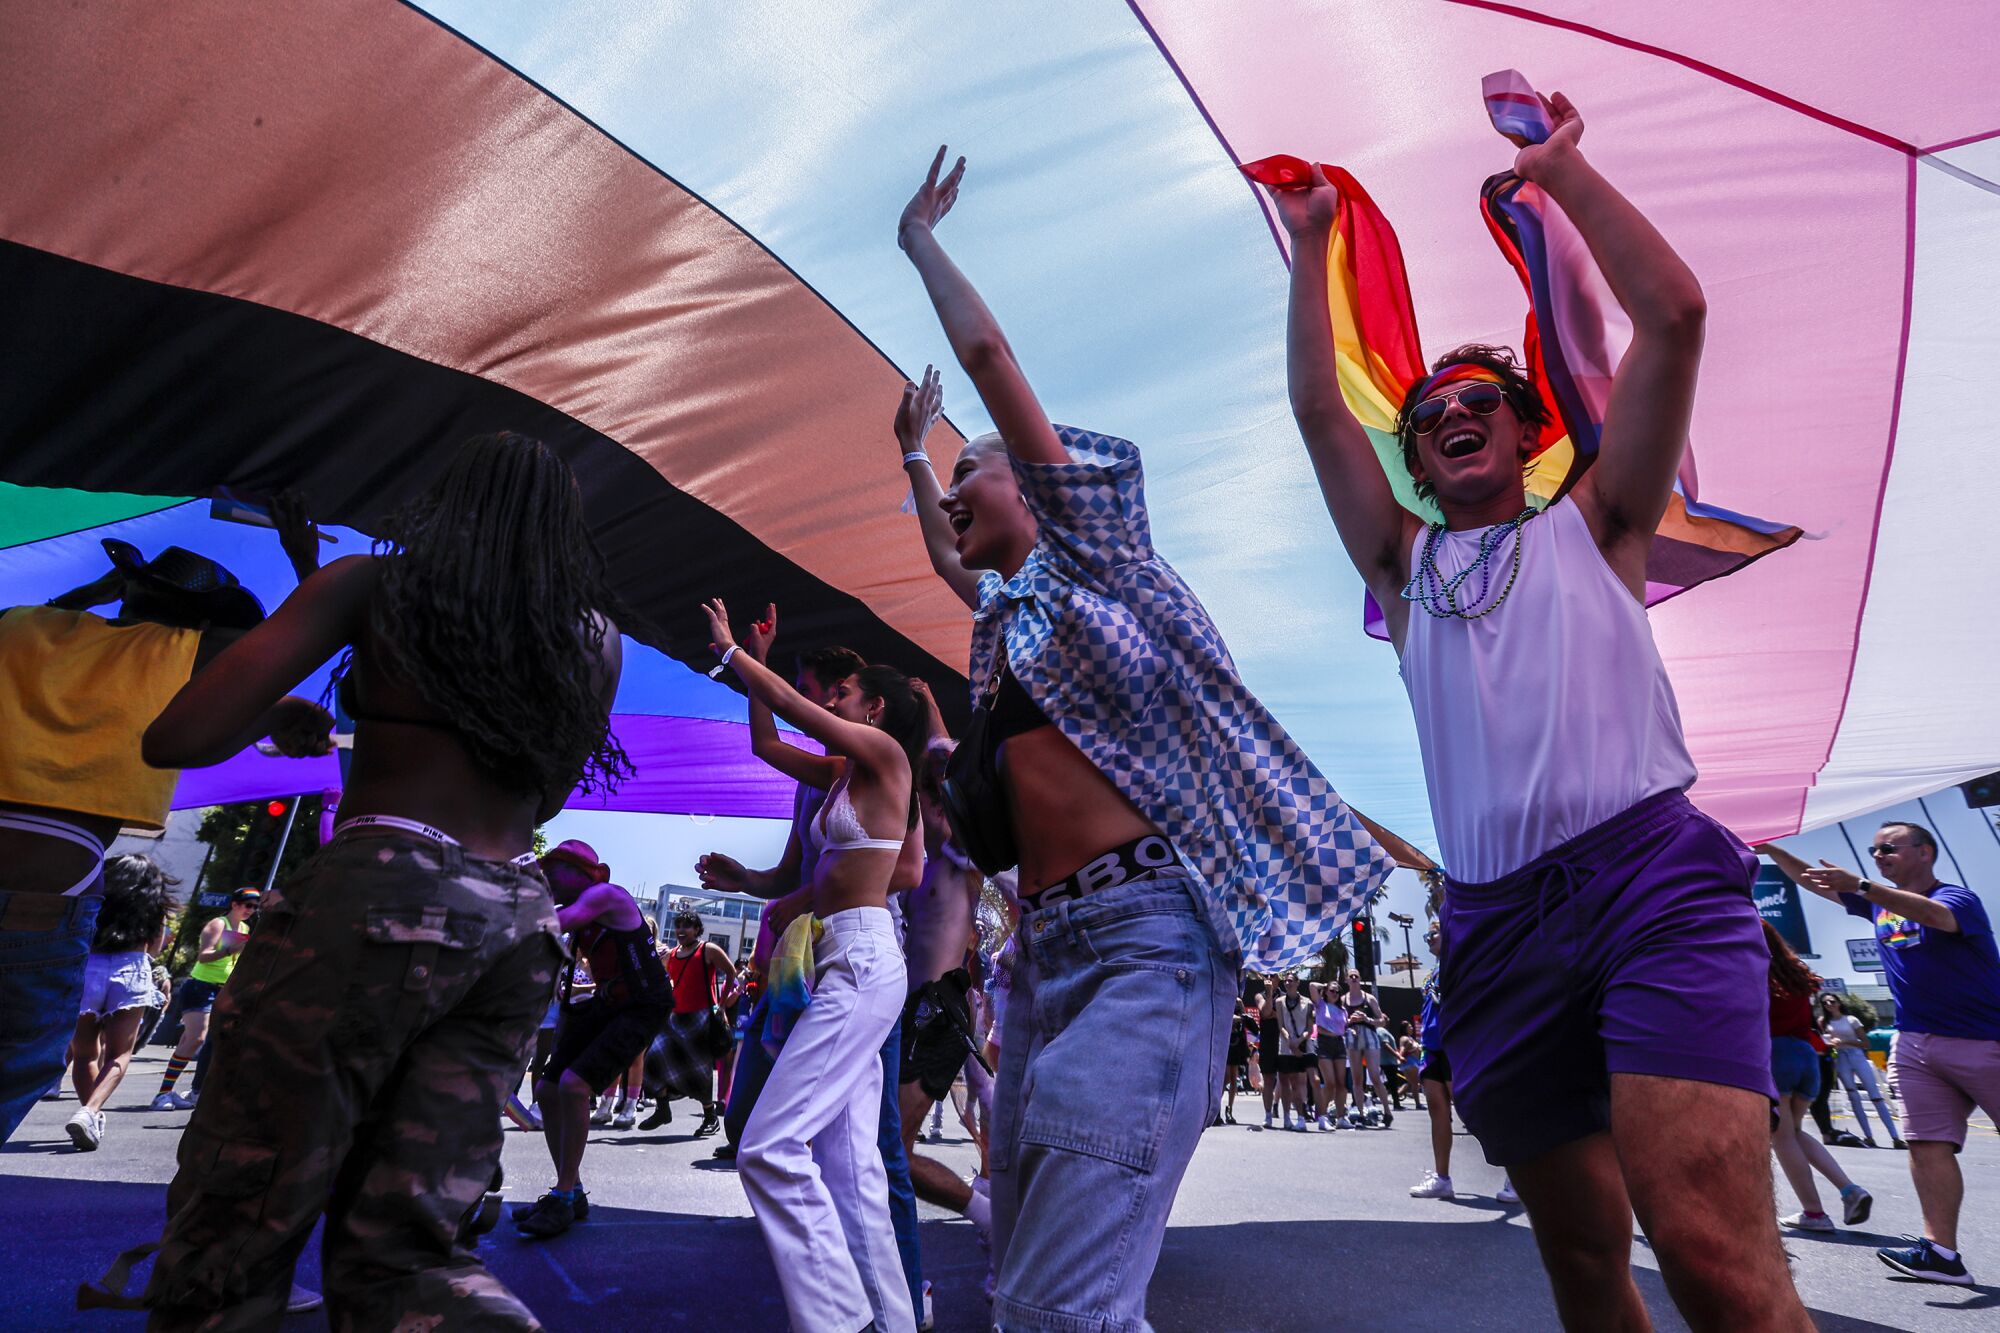 People celebrating under a gigantic pride flag